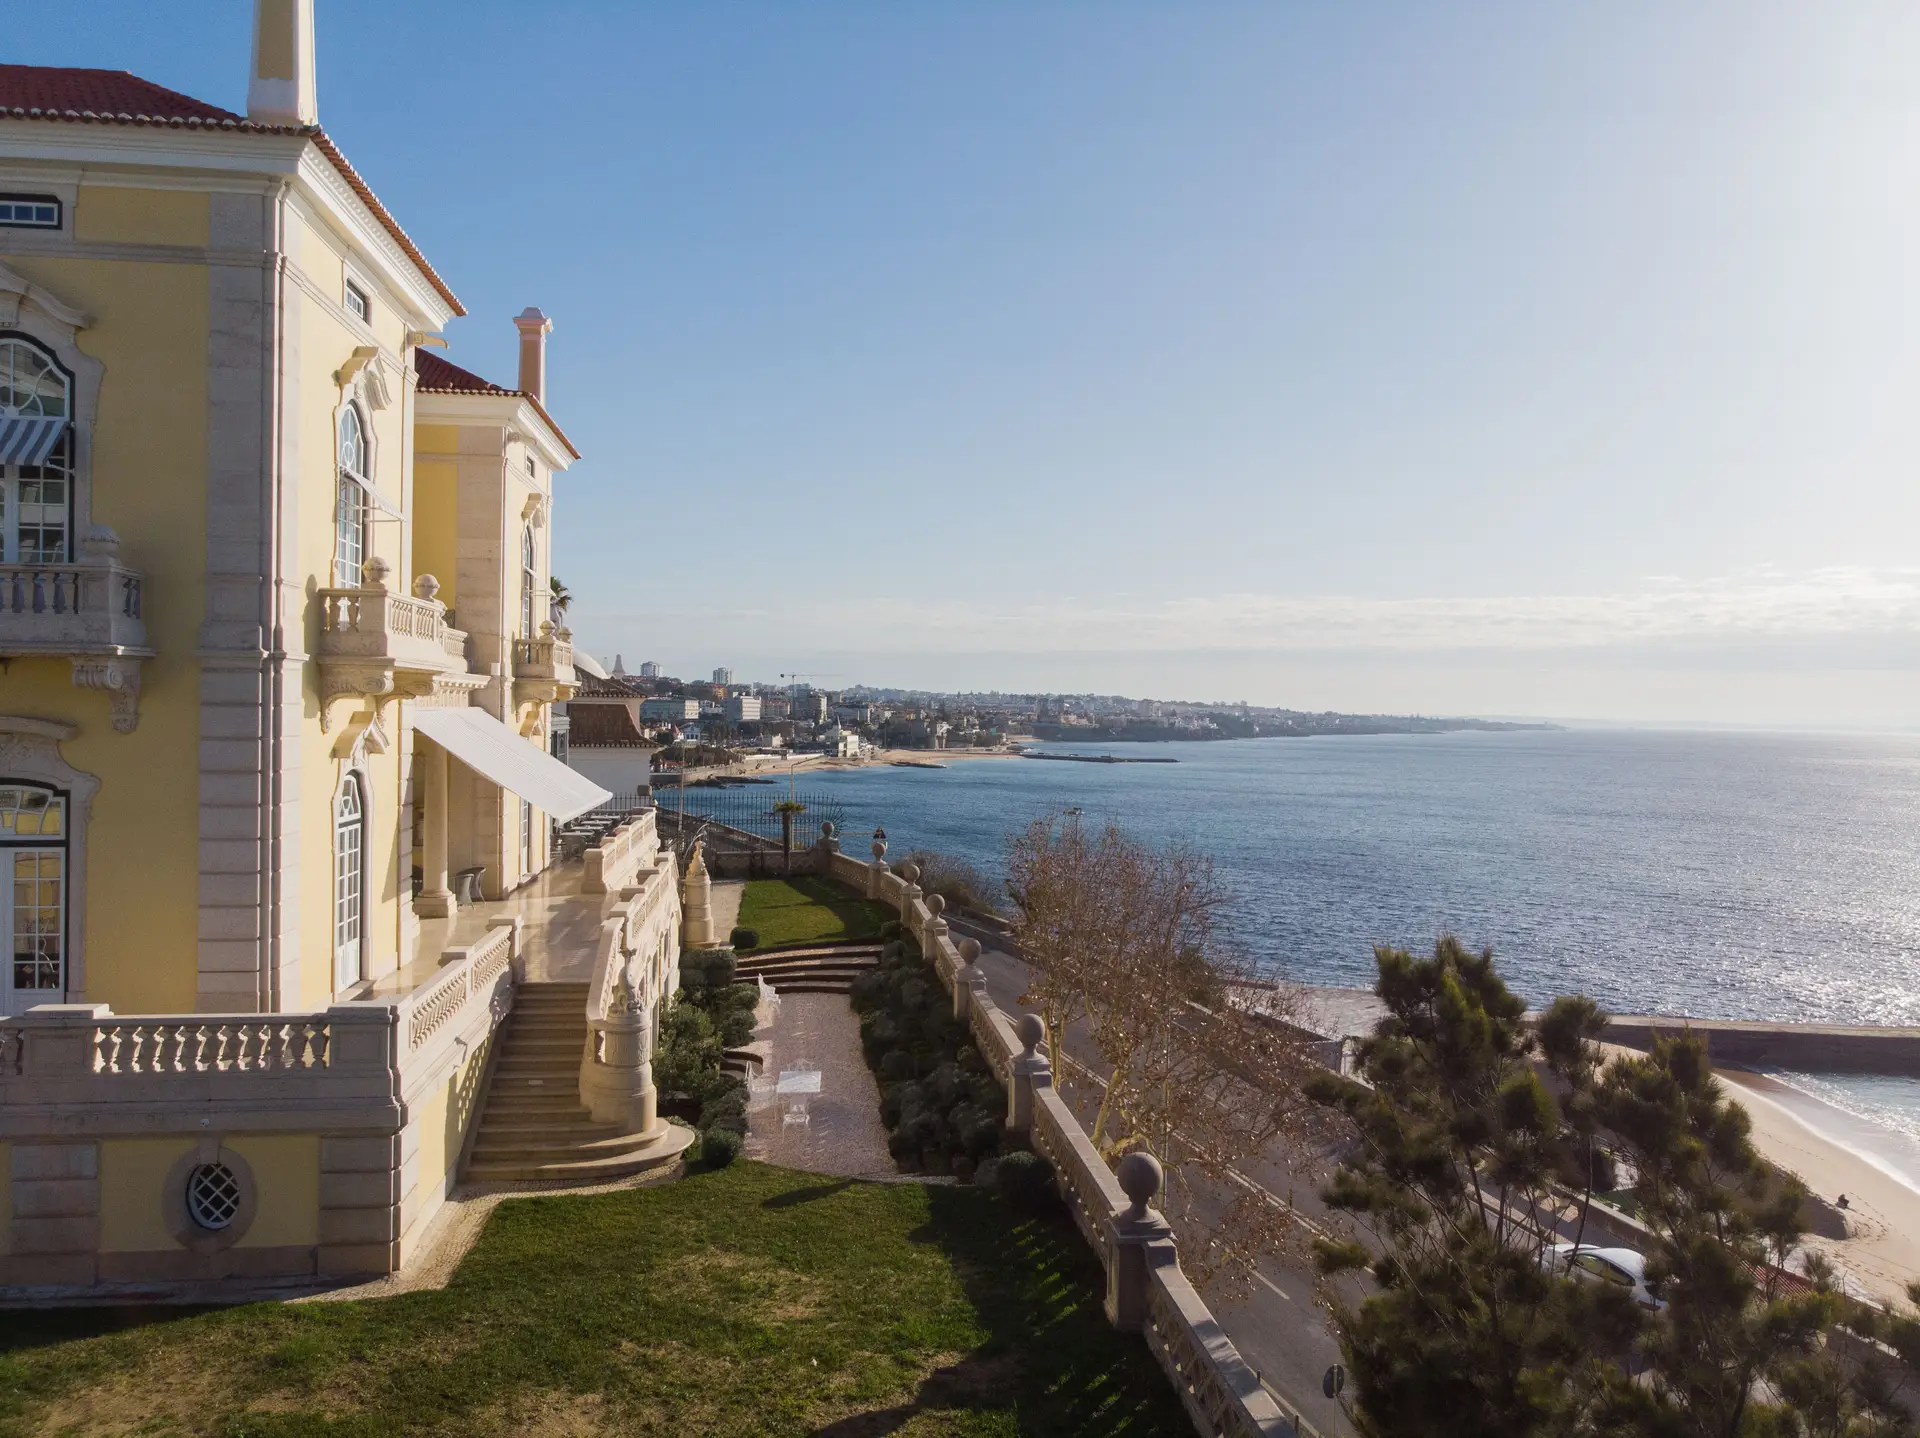 Com vista para o mar, palacete premiado no Estoril renasce como hotel de luxo